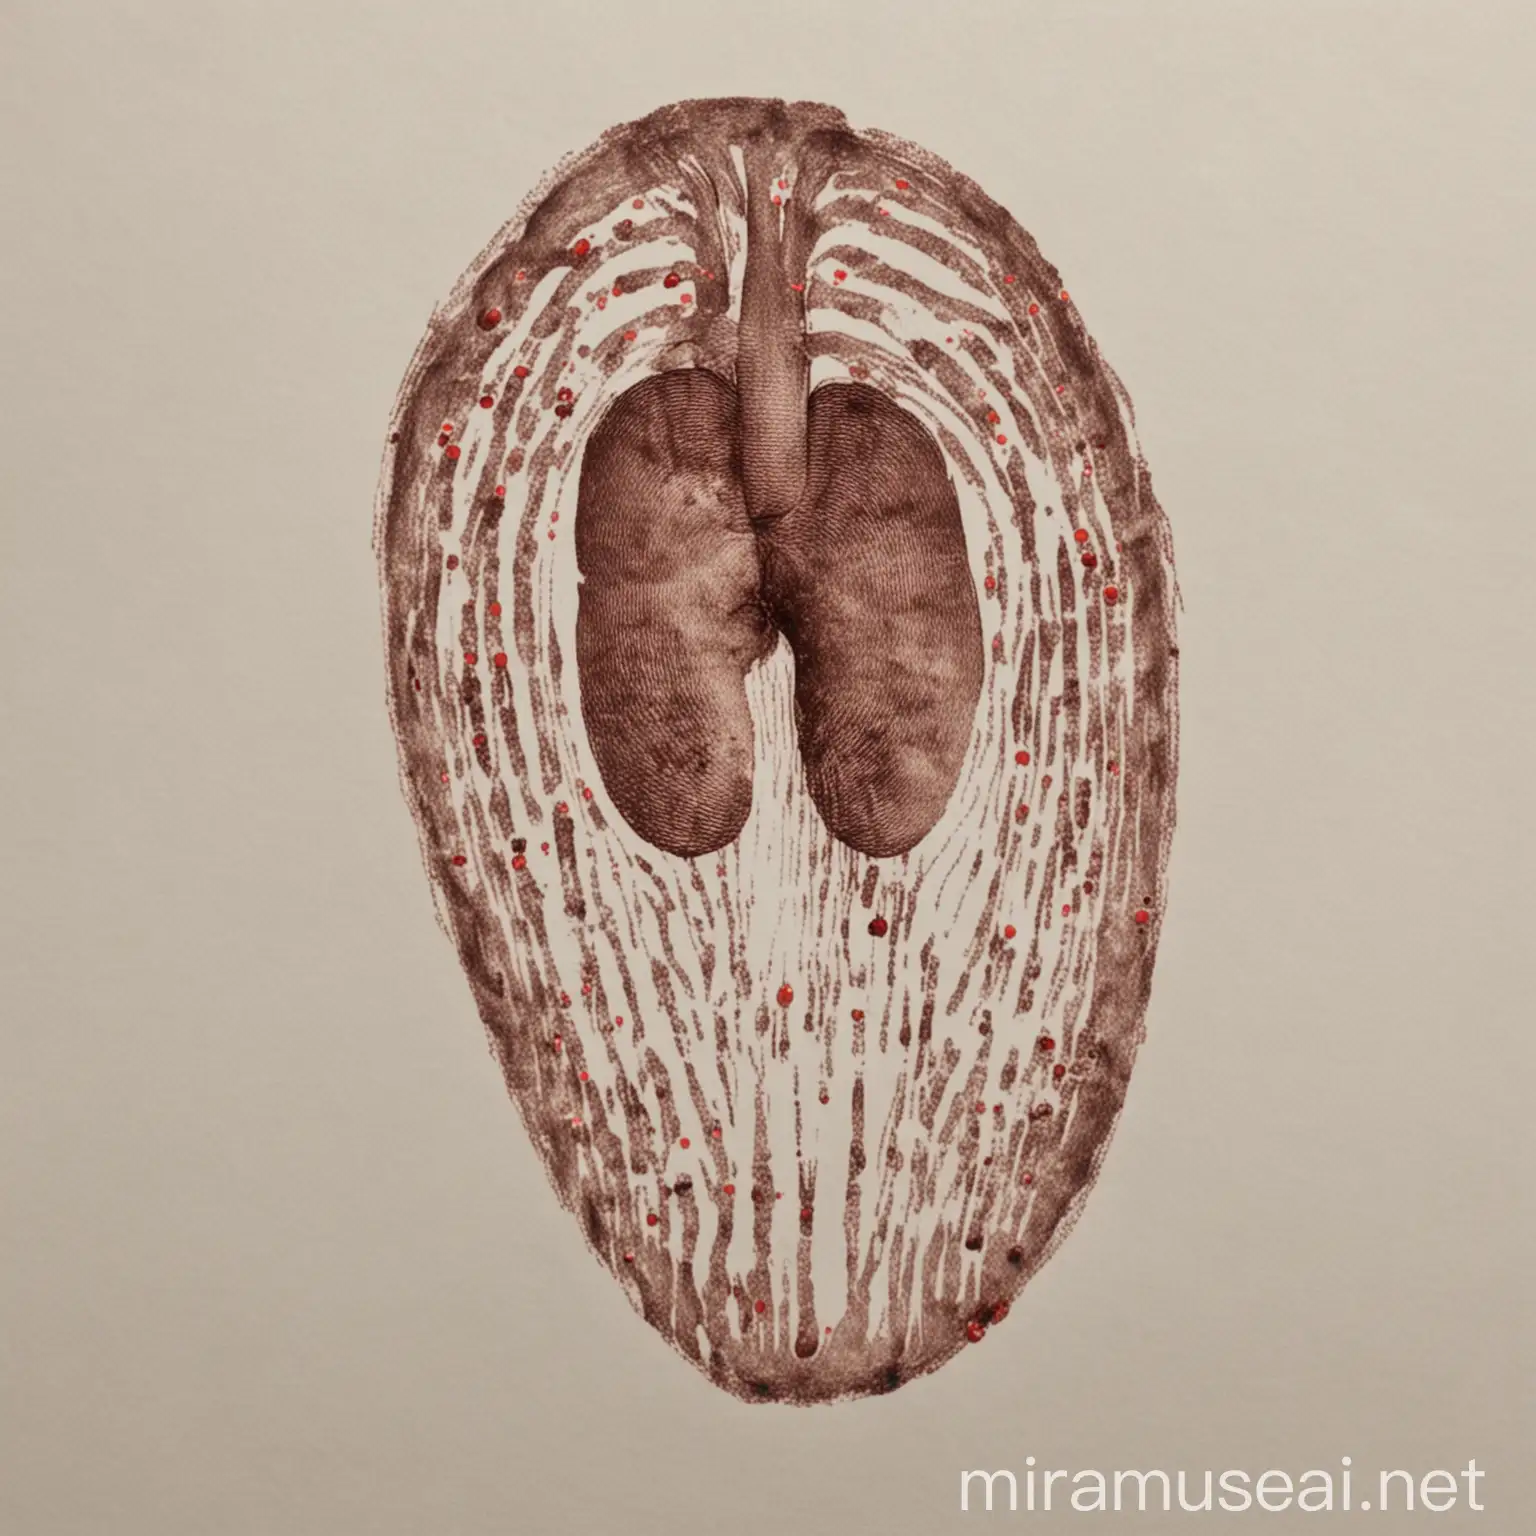 Human Kidney with Fingerprint Pattern Medical Illustration